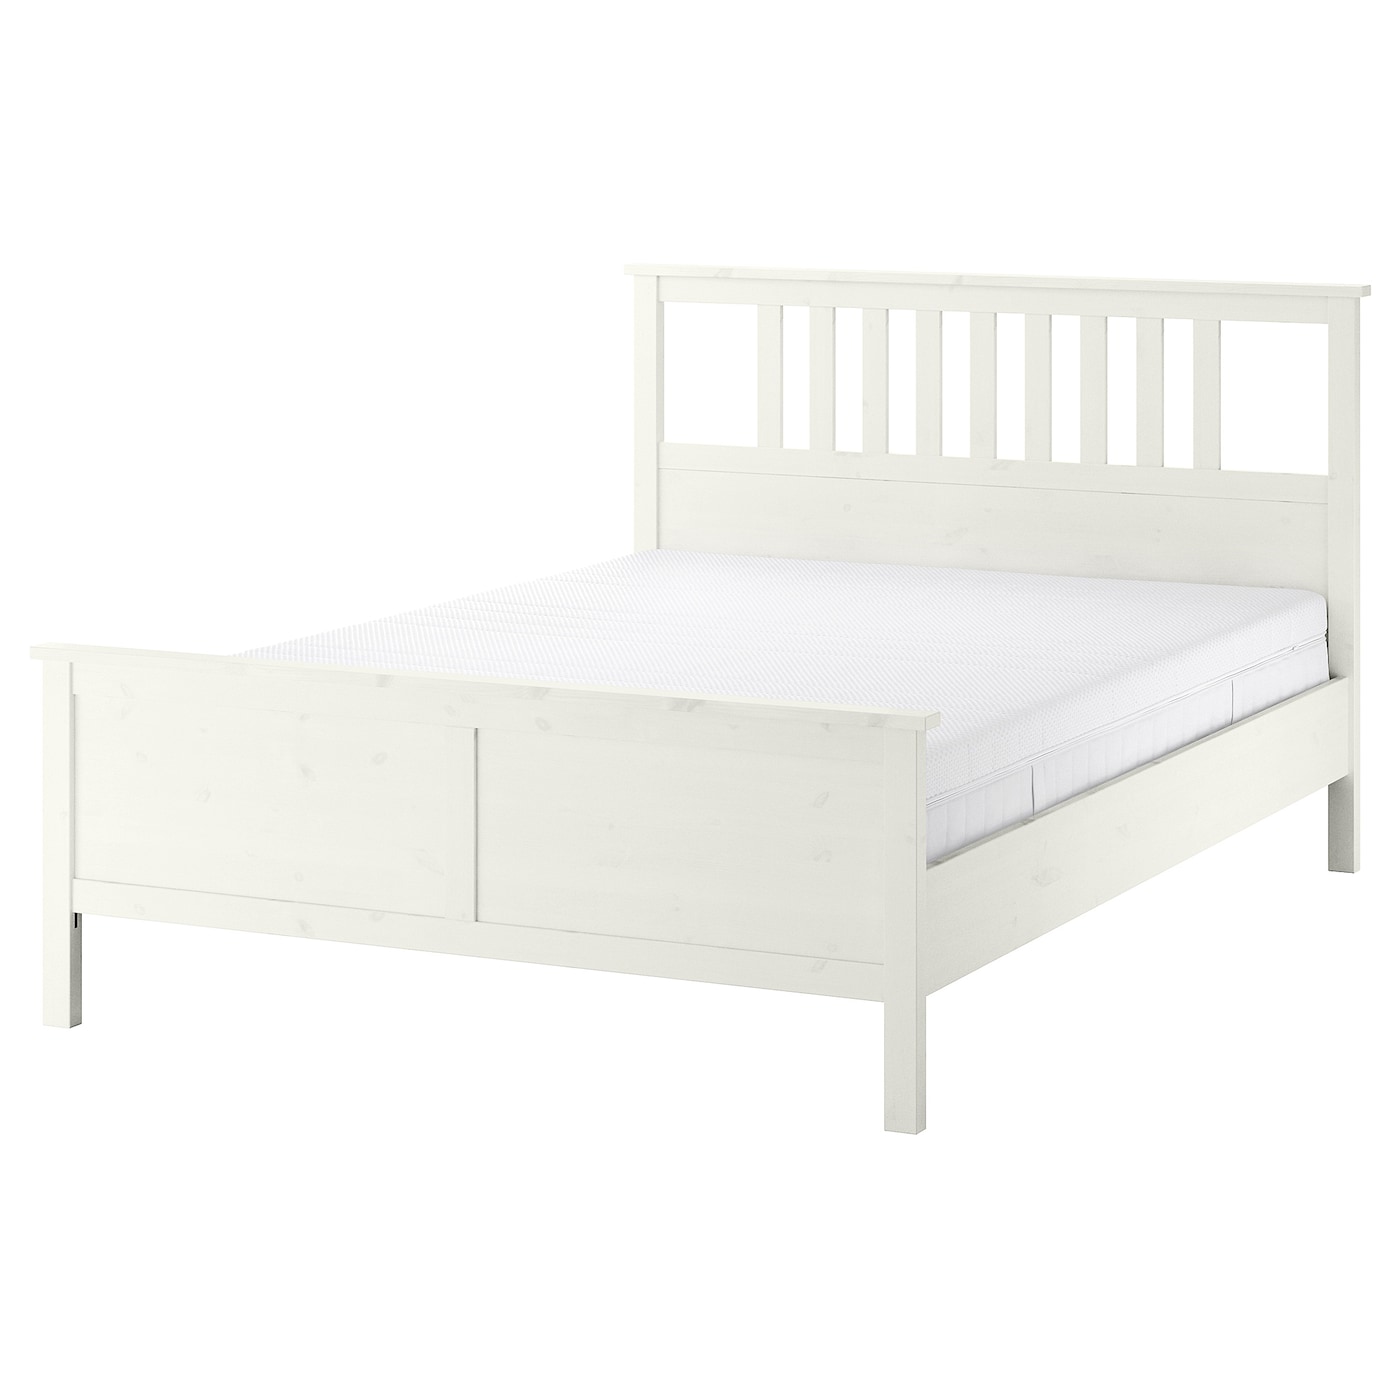 Каркас кровати - IKEA HEMNES, 200х140 см, матрас средне-жесткий, белый, ХЕМНЕС ИКЕА